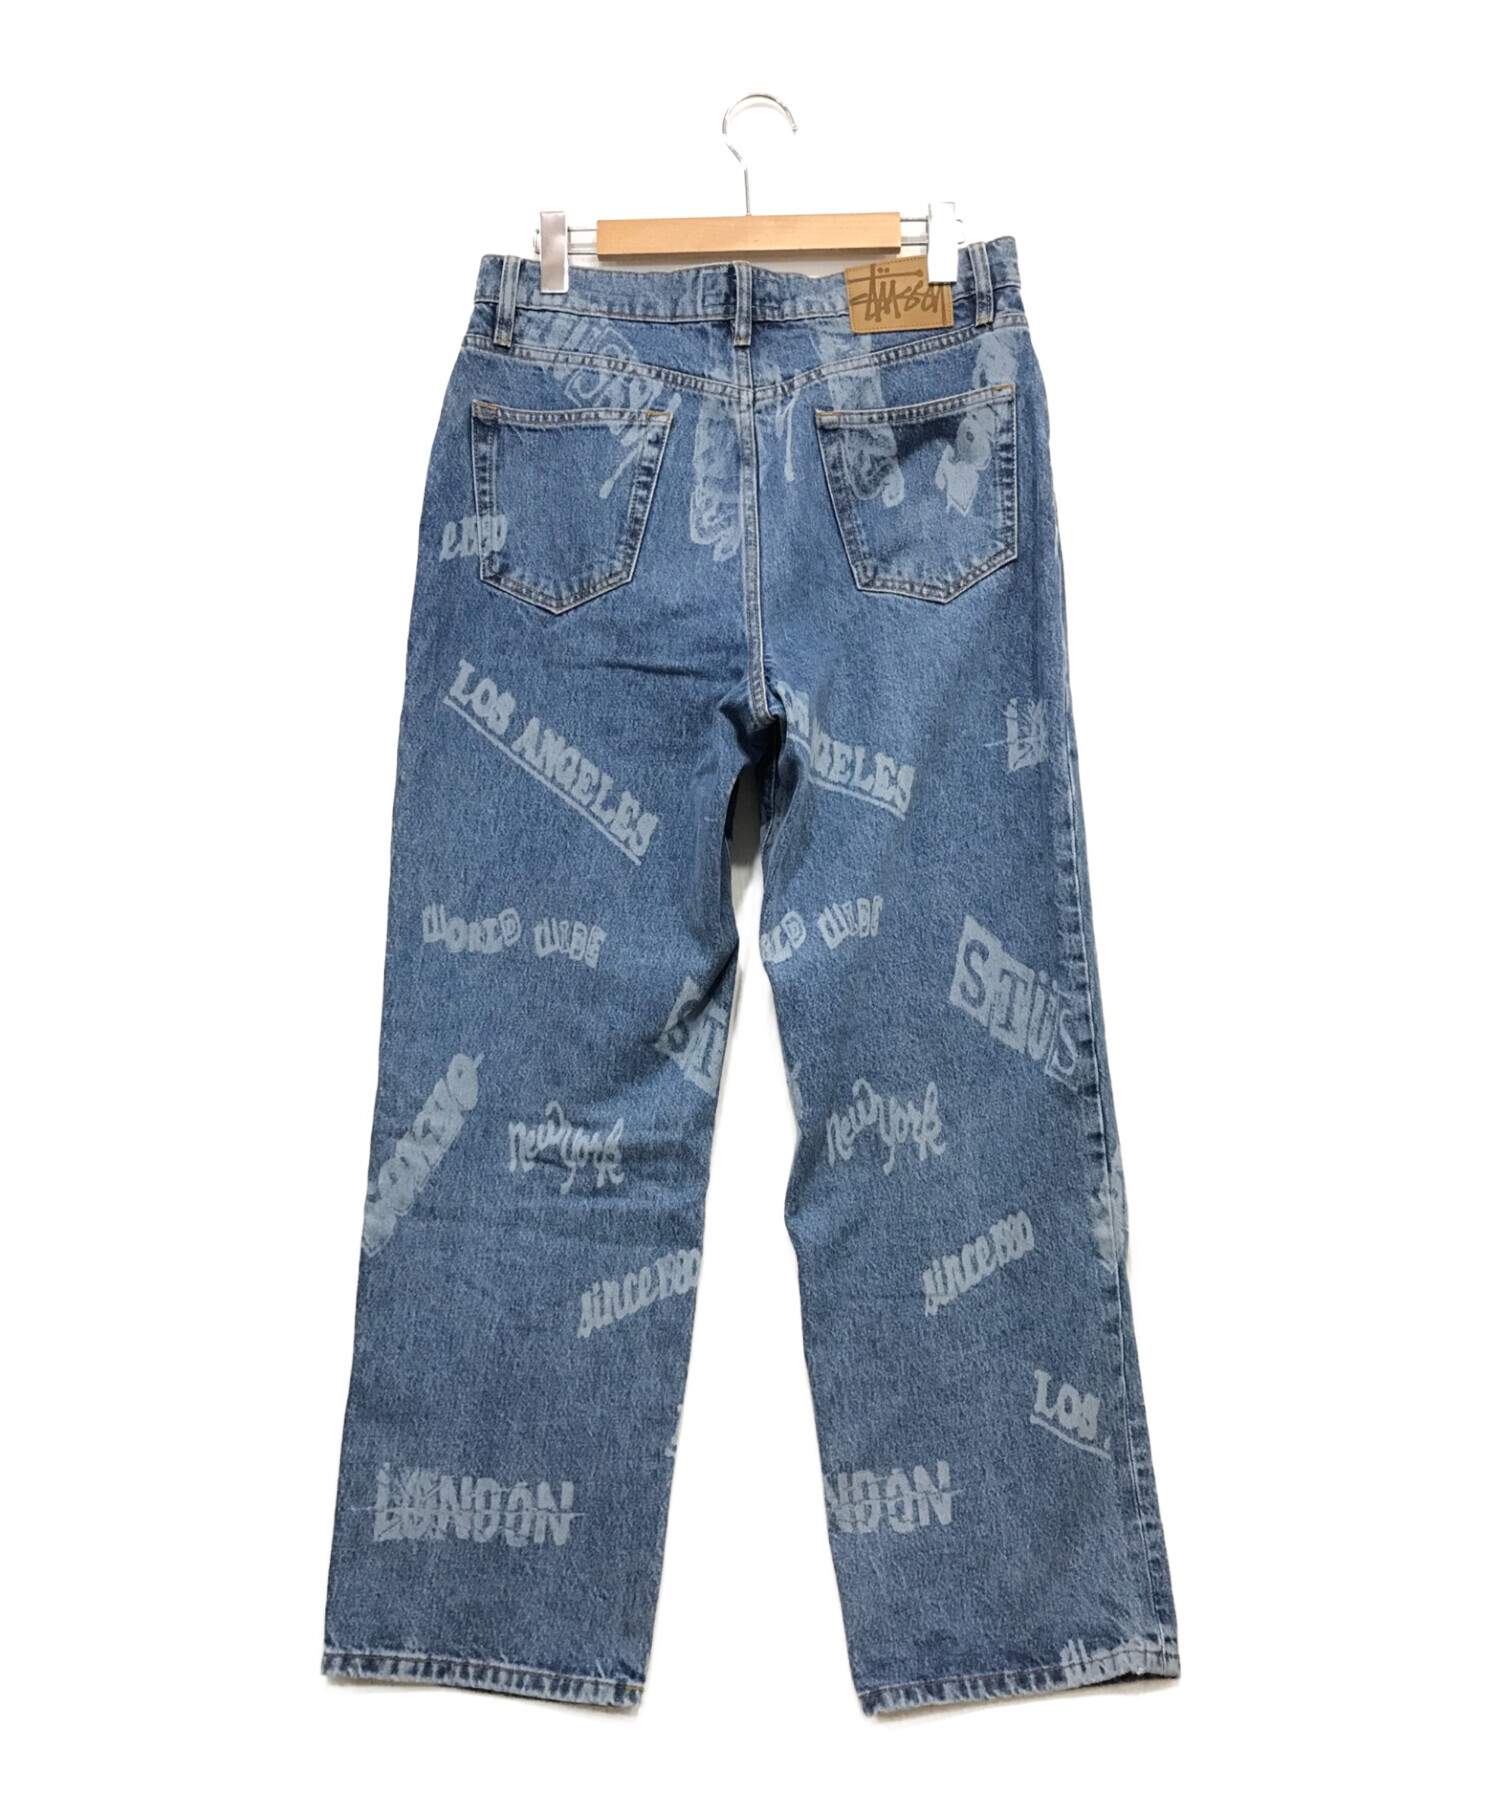 パンツStussy Worldwide Big Ol’ Jeans